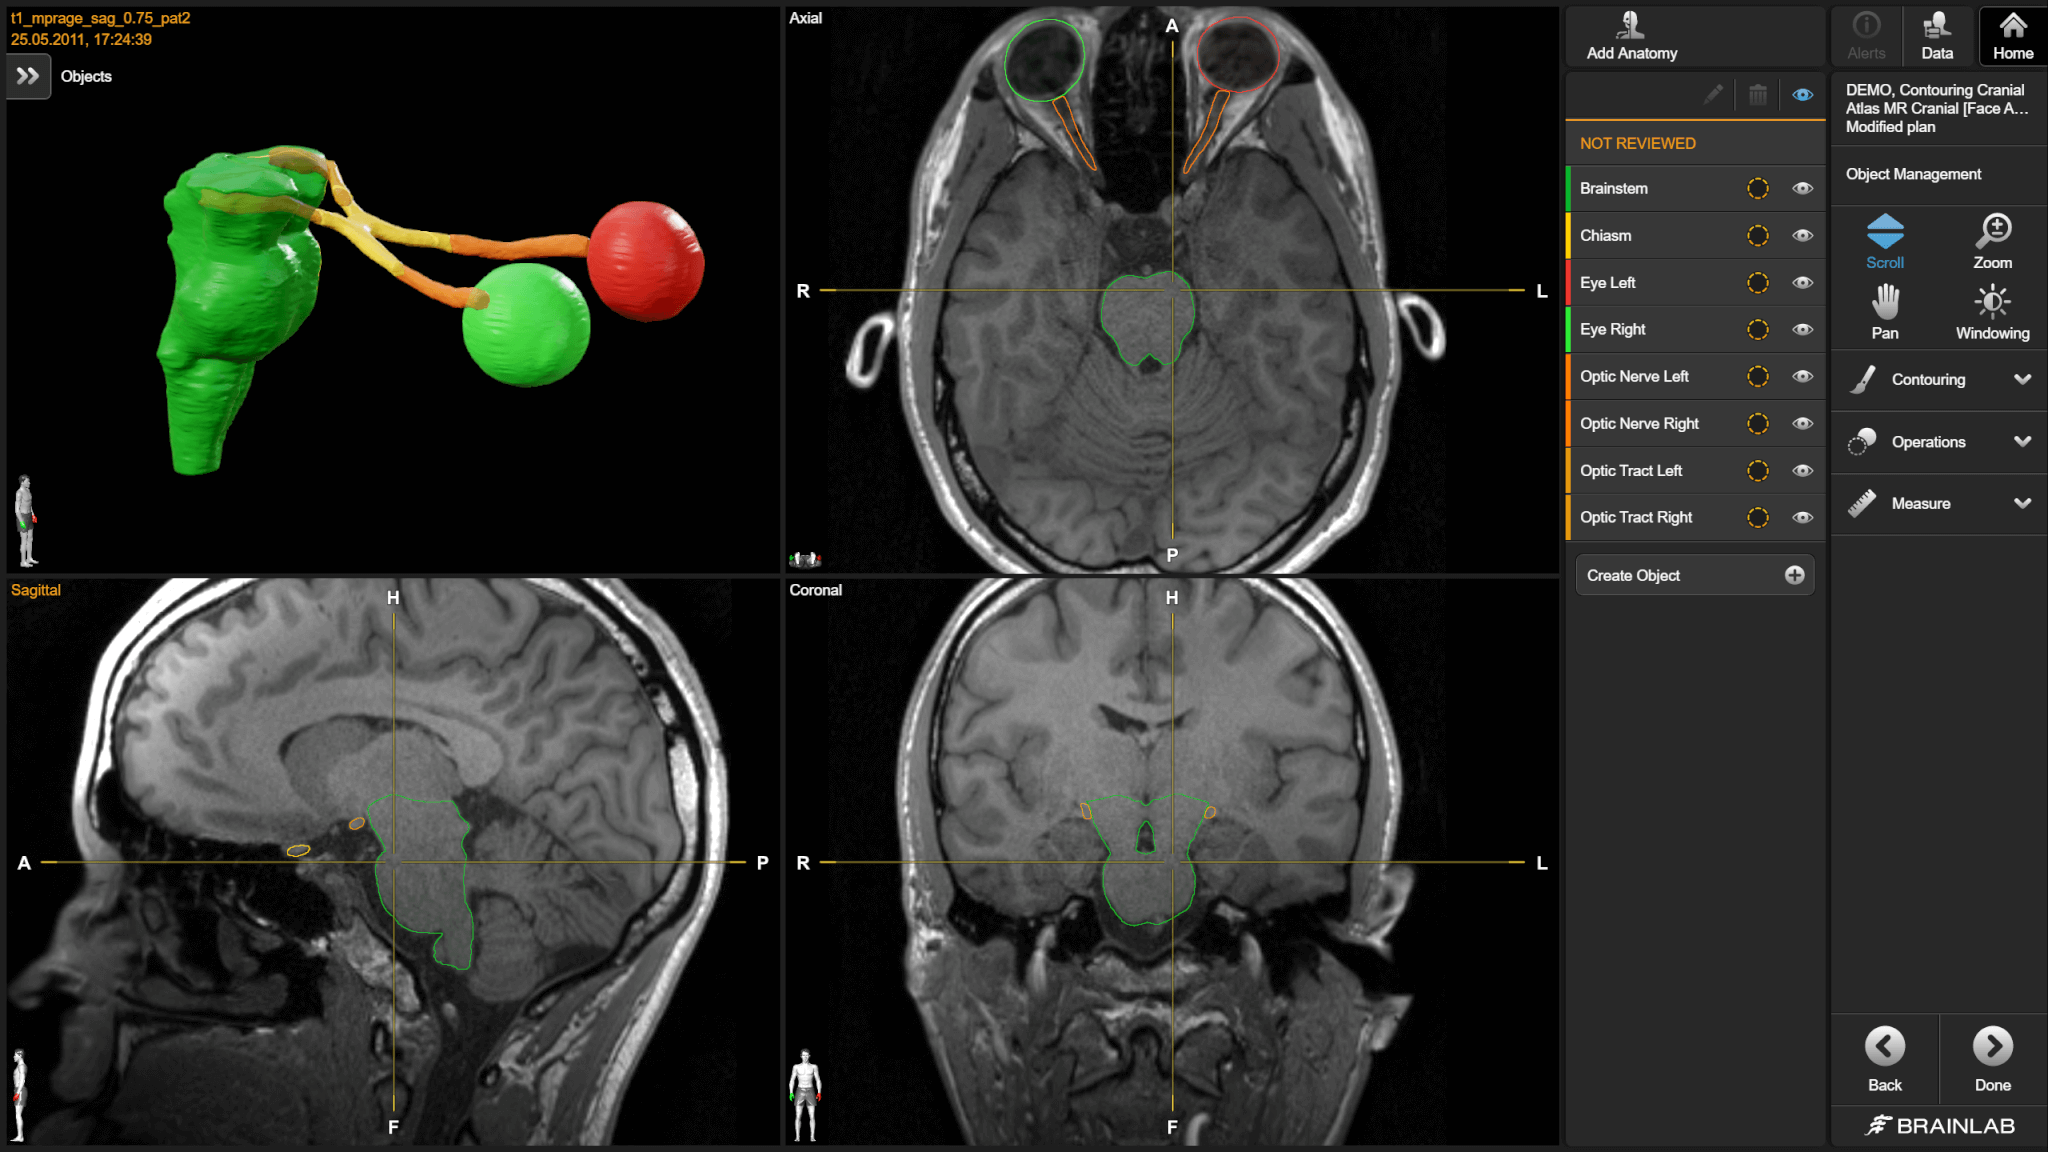 Captura de tela do software Anatomical Mapping usado para segmentar diferentes estruturas cerebrais para o planejamento de tratamentos por radioterapia.